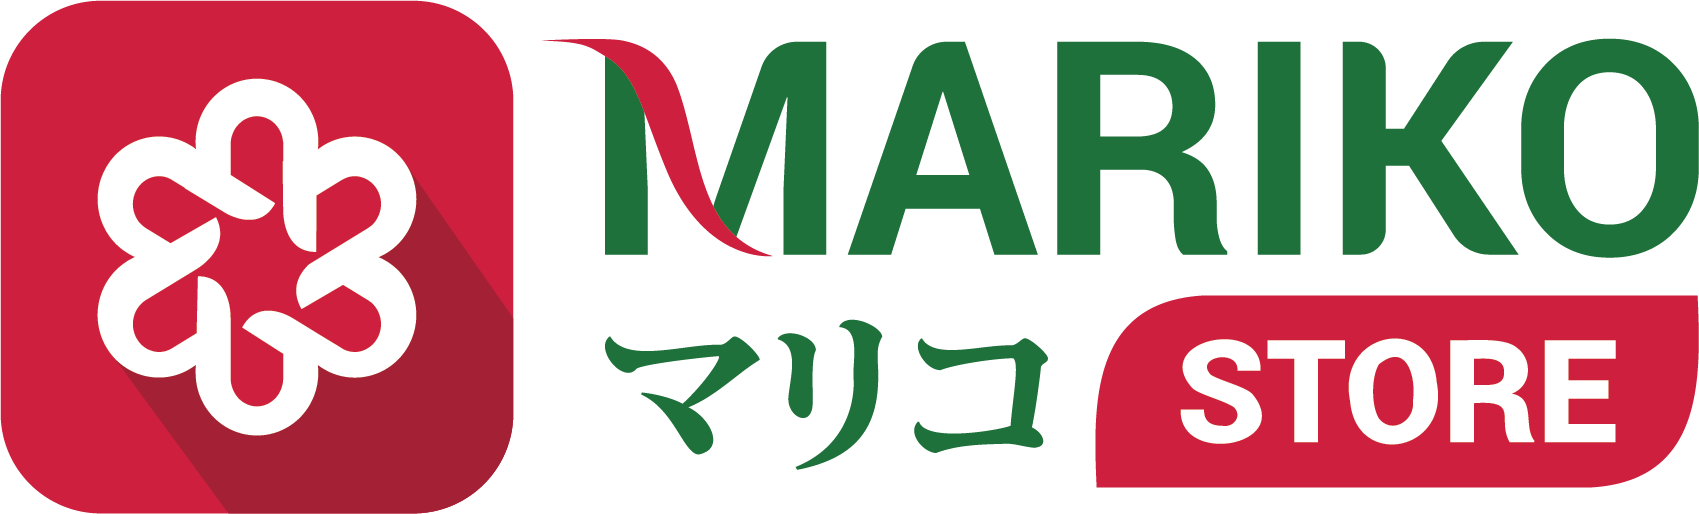 Mariko Store